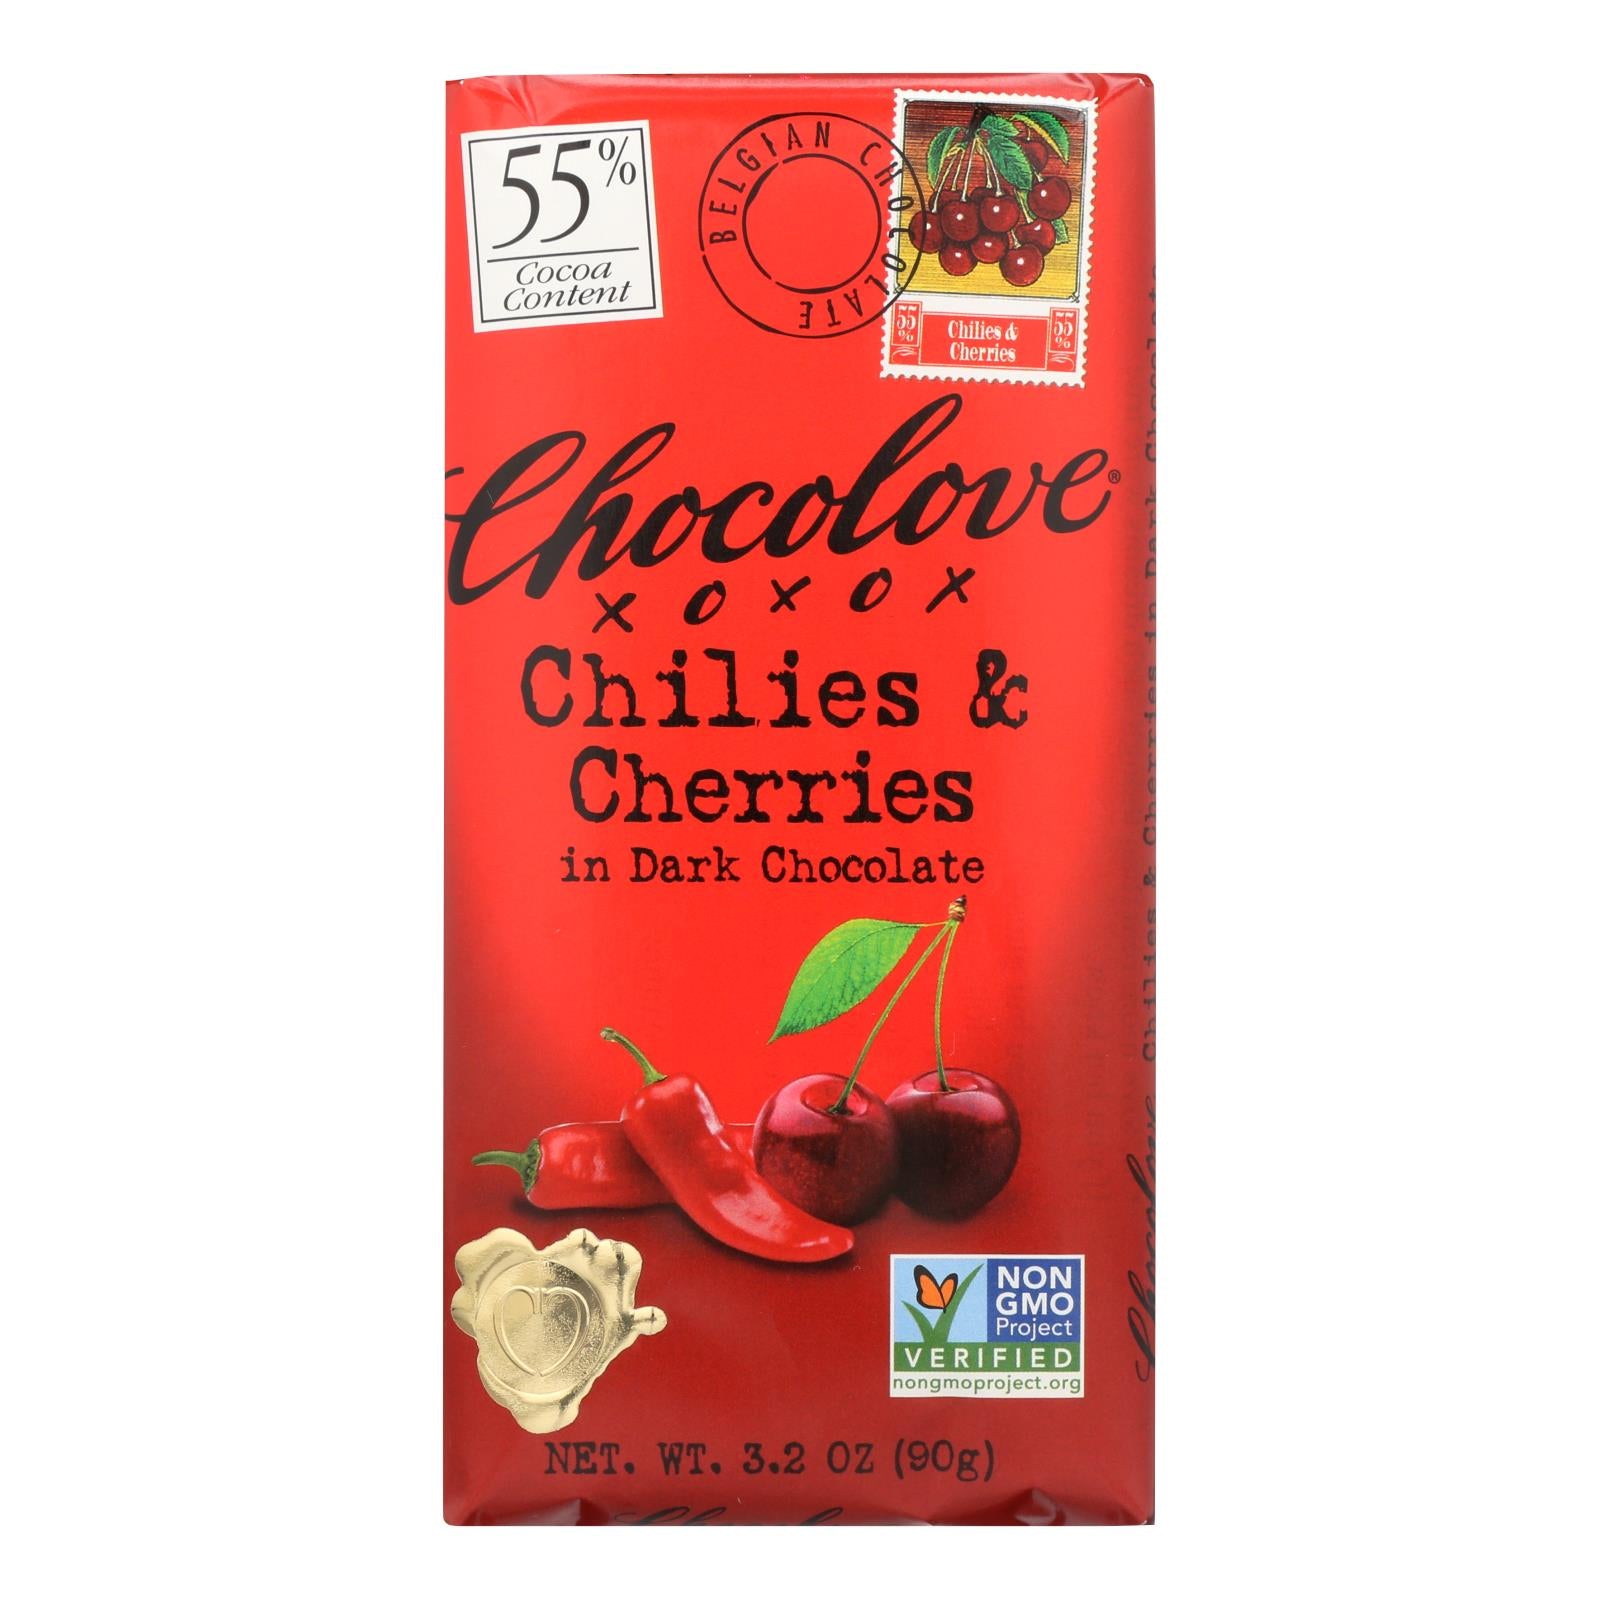 Chocolove Xoxox - Premium Chocolate Bar - Dark Chocolate - Chilies and Cherries - 3.2 oz Bars - Case of 12